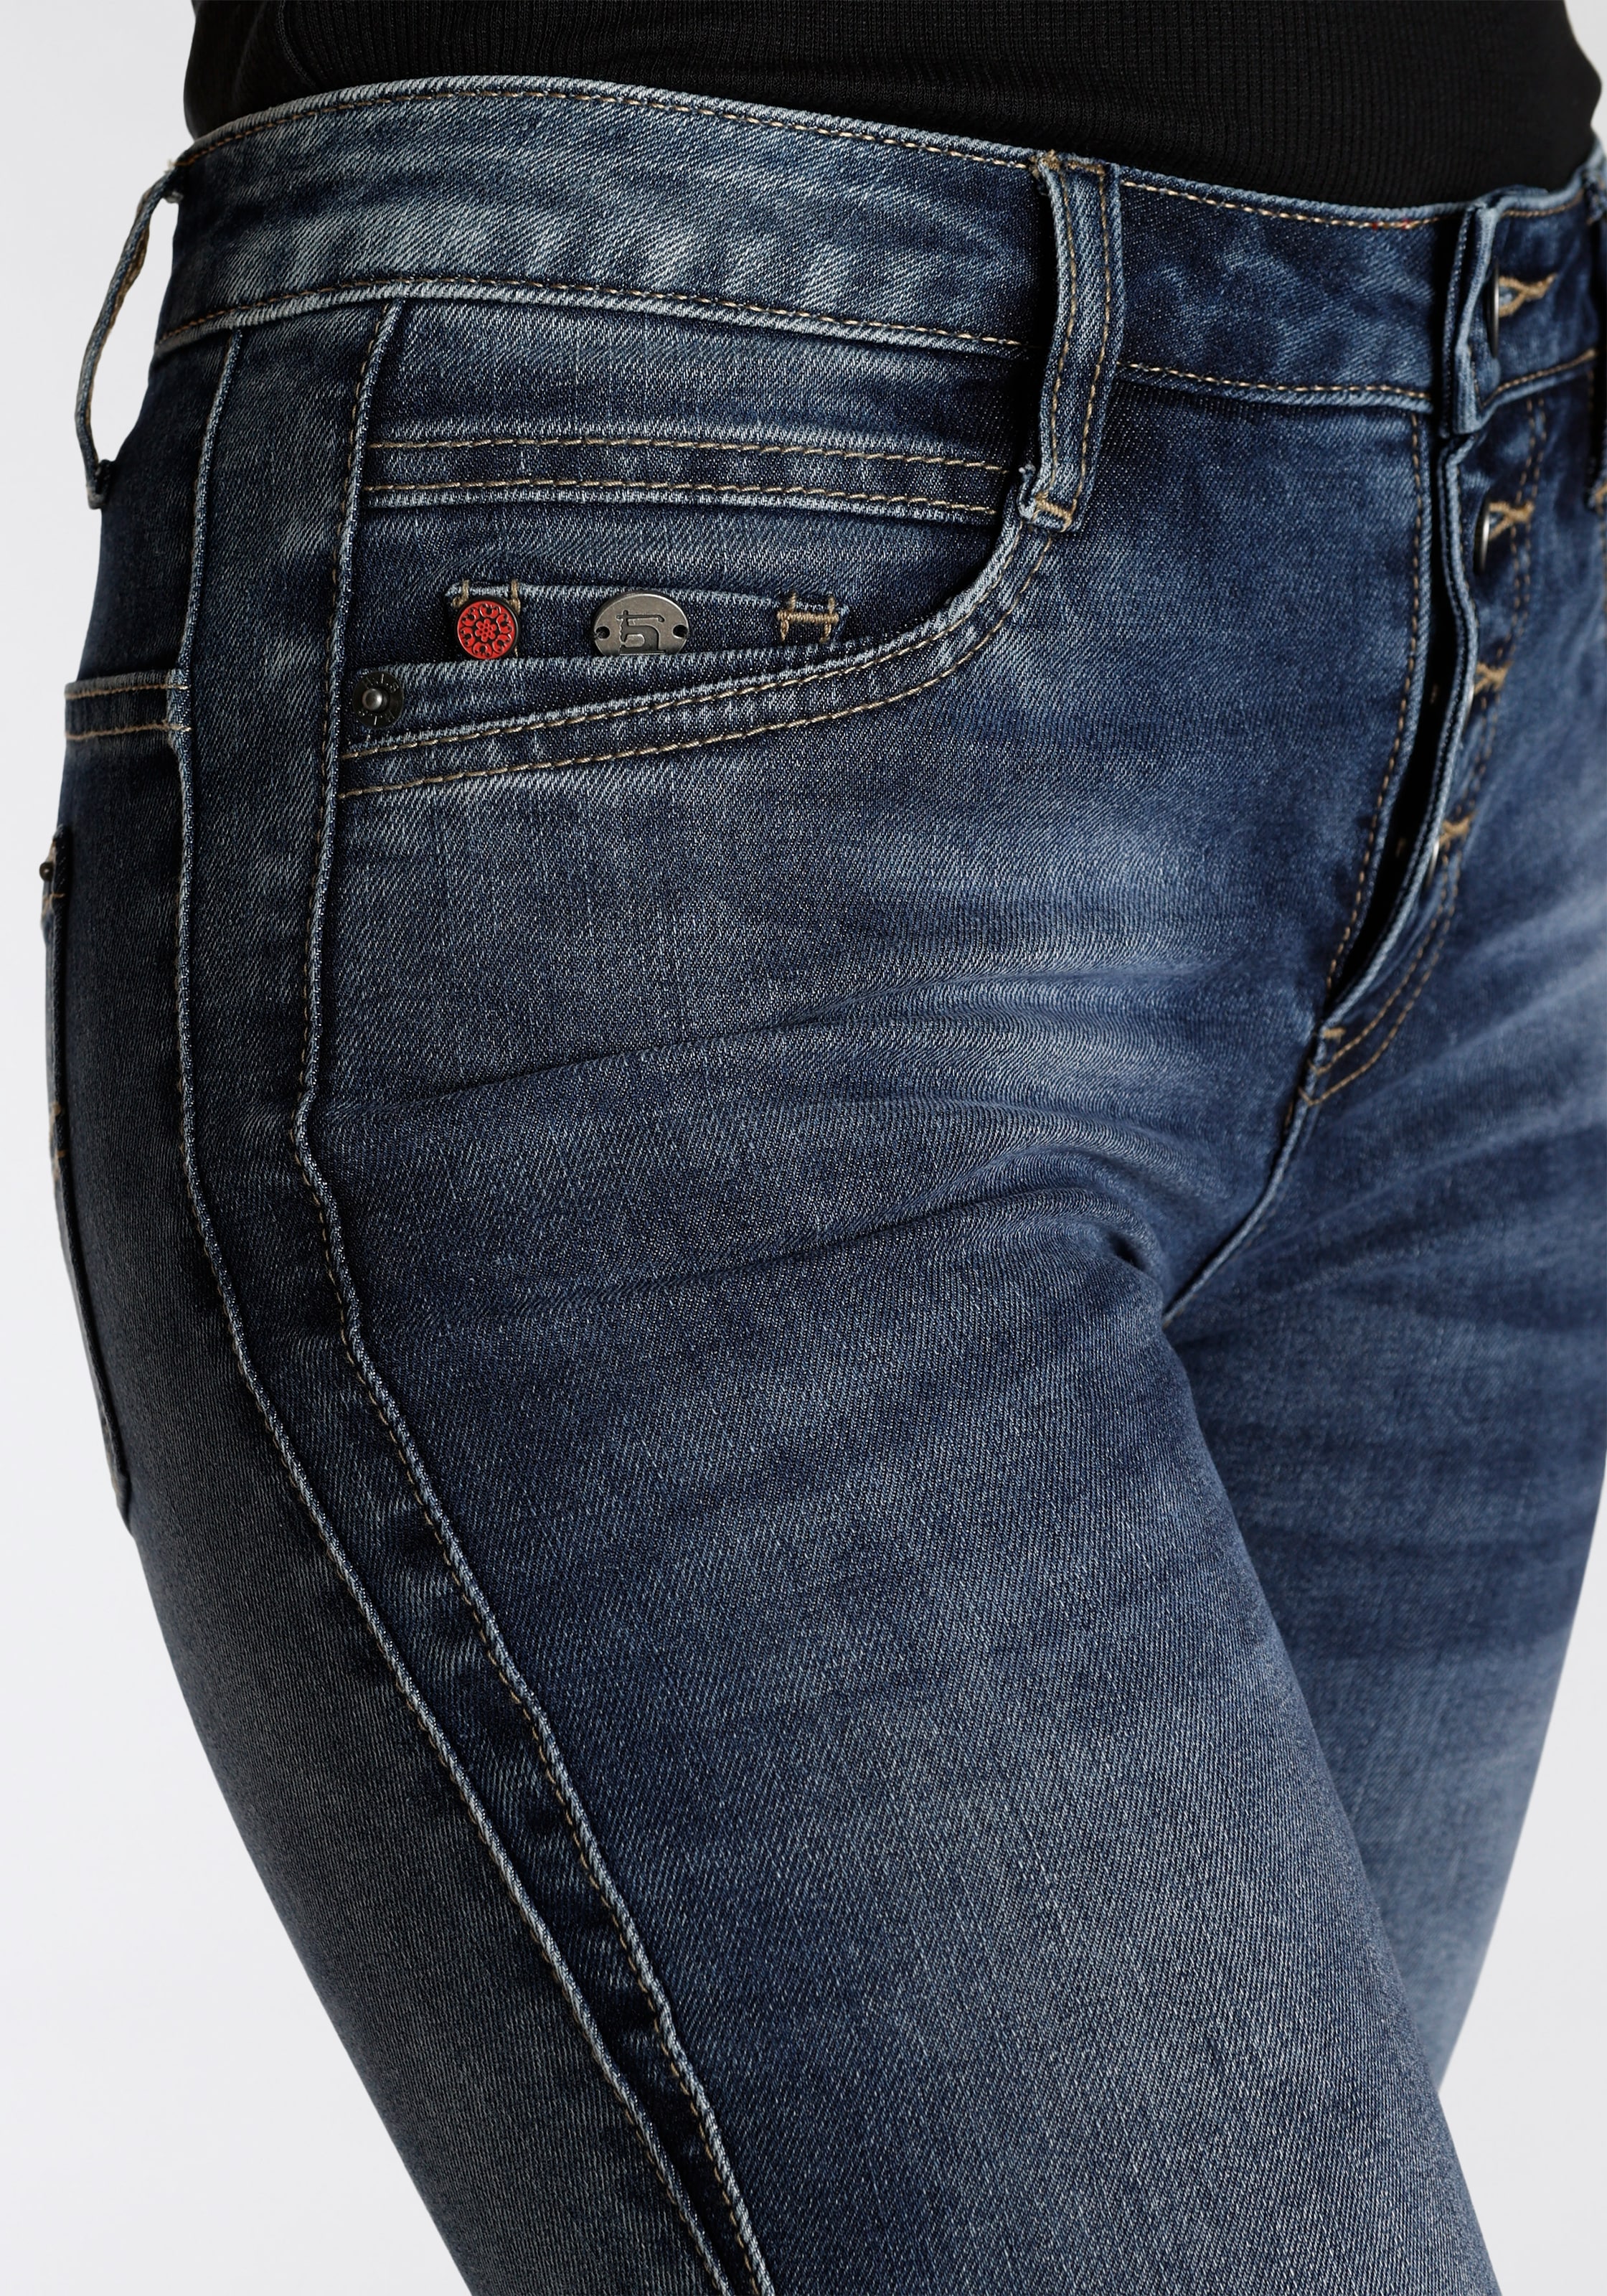 Produktion wassersparende bestellen ökologische, Ozon H.I.S 5-Pocket-Jeans durch Wash online »macyHS«,